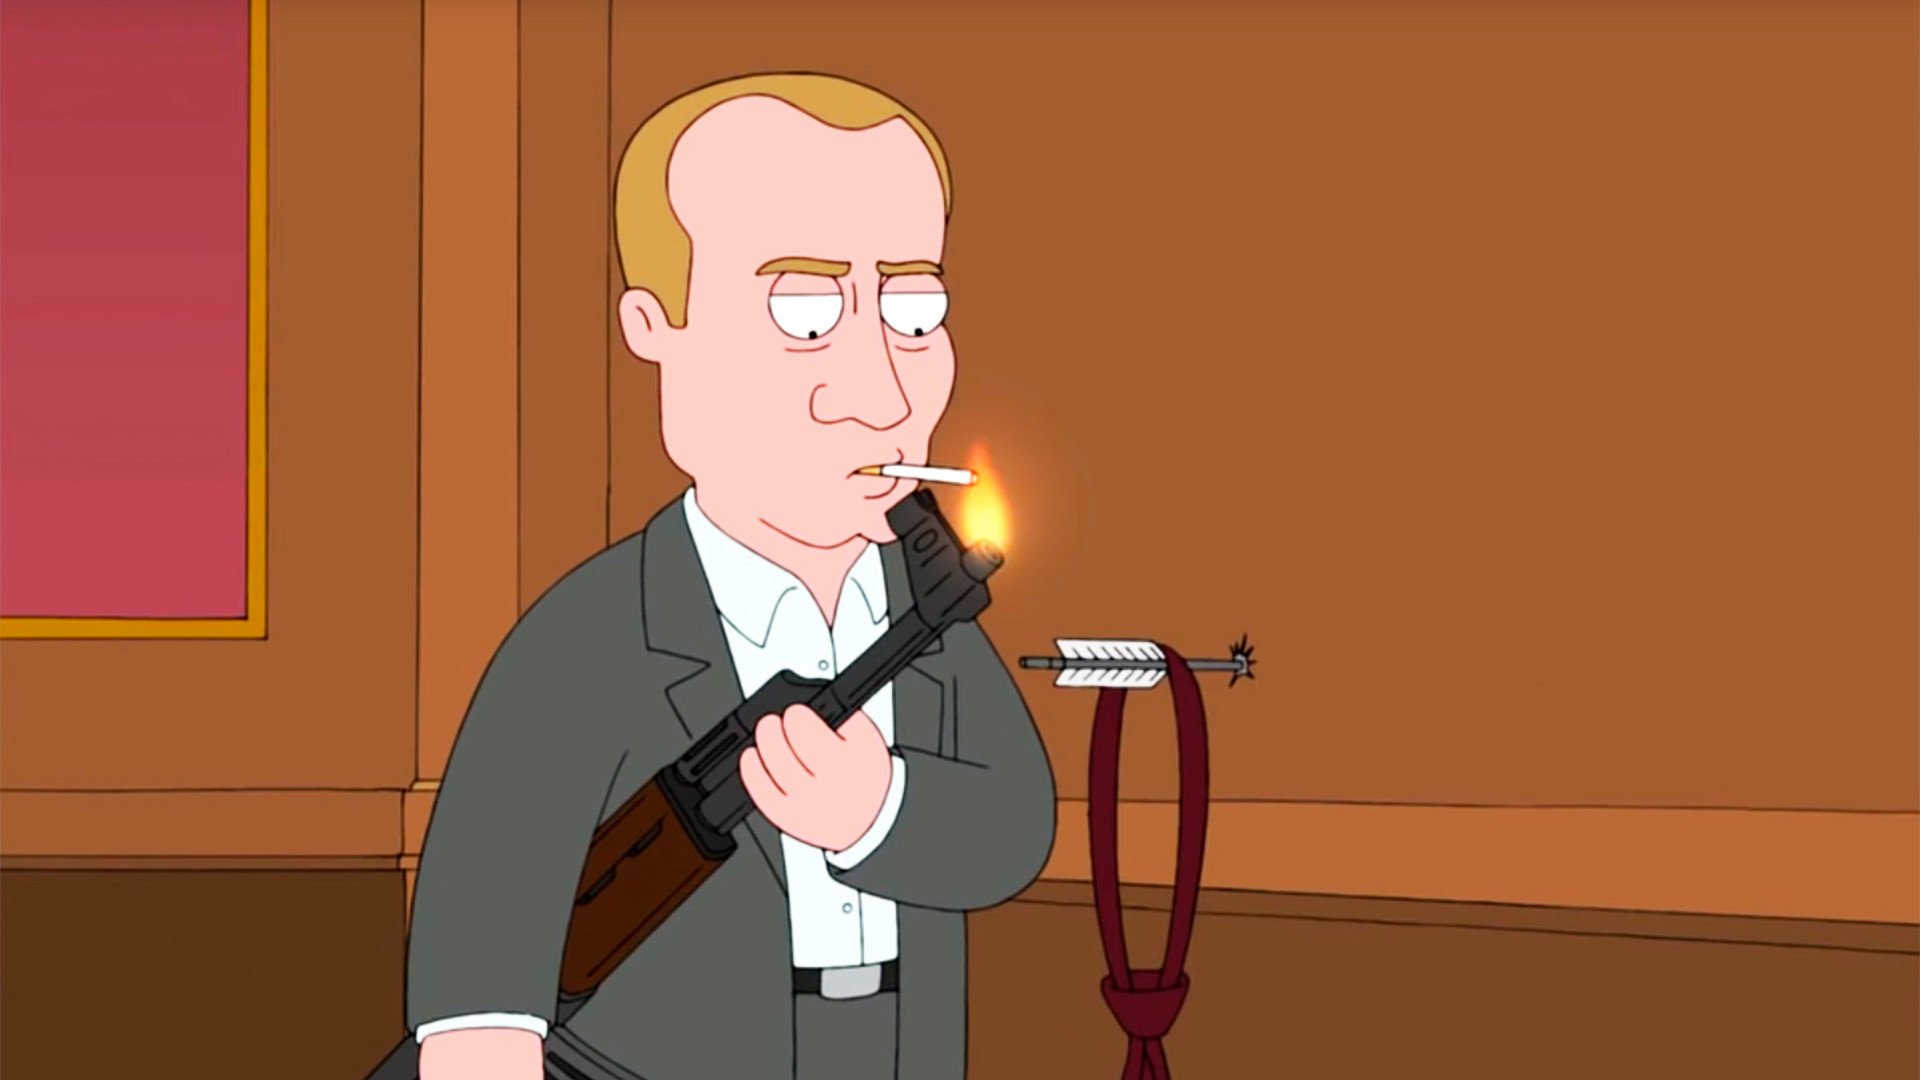 Vladimir Putin in Family Guy